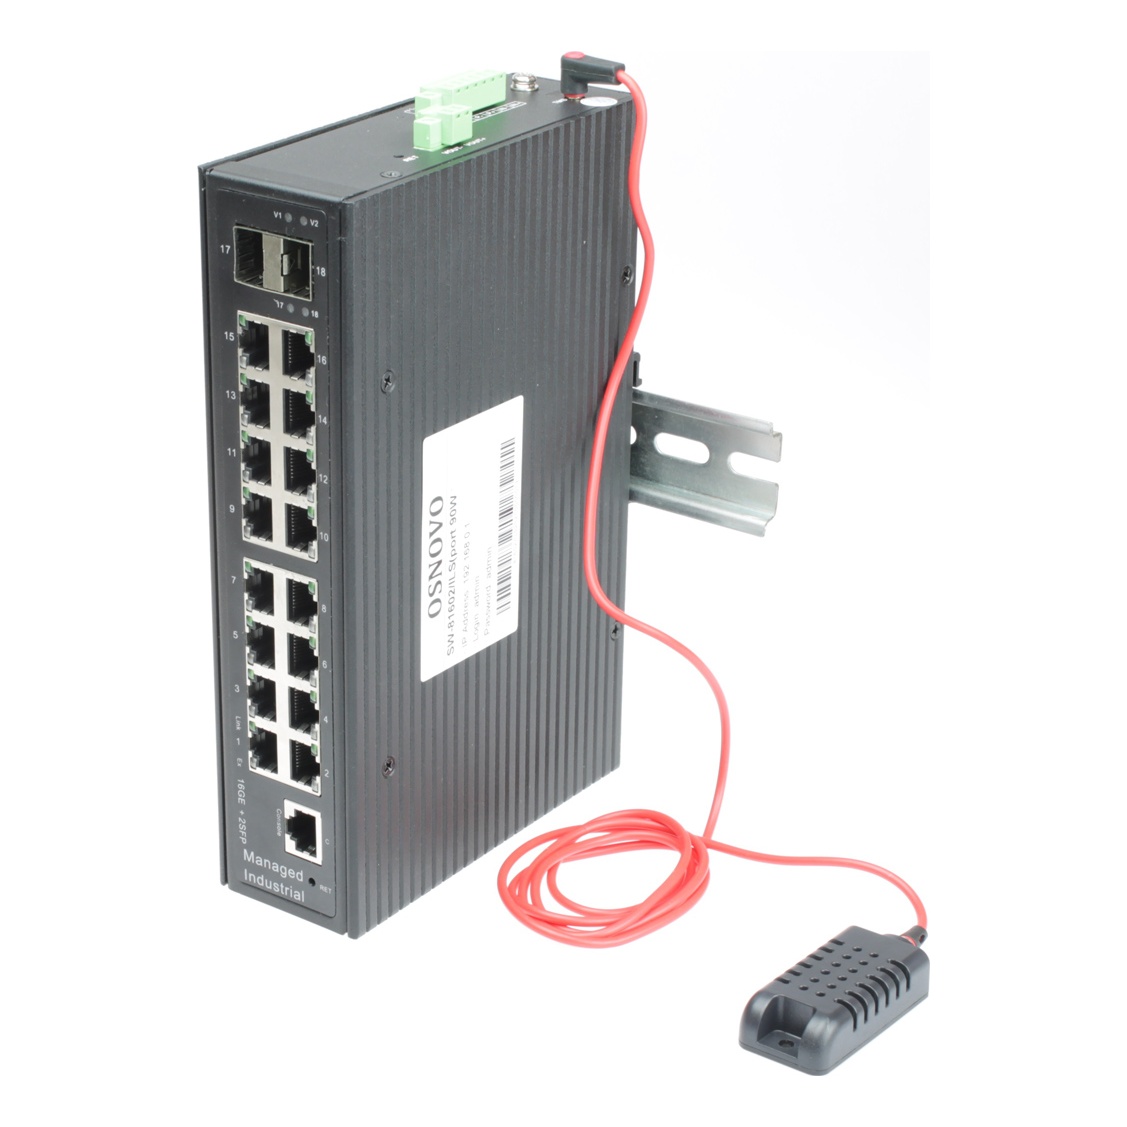 OSNOVO SW-81602/ILS(Port 90W,600W) SW-81602/ILS(Port 90W,600W) Промышленный управляемый (L2+) HiPoE коммутатор Gigabit Ethernet на 16GE PoE + 2GE SFP порта с функцией мониторинга температуры/ влажности/ напряжения